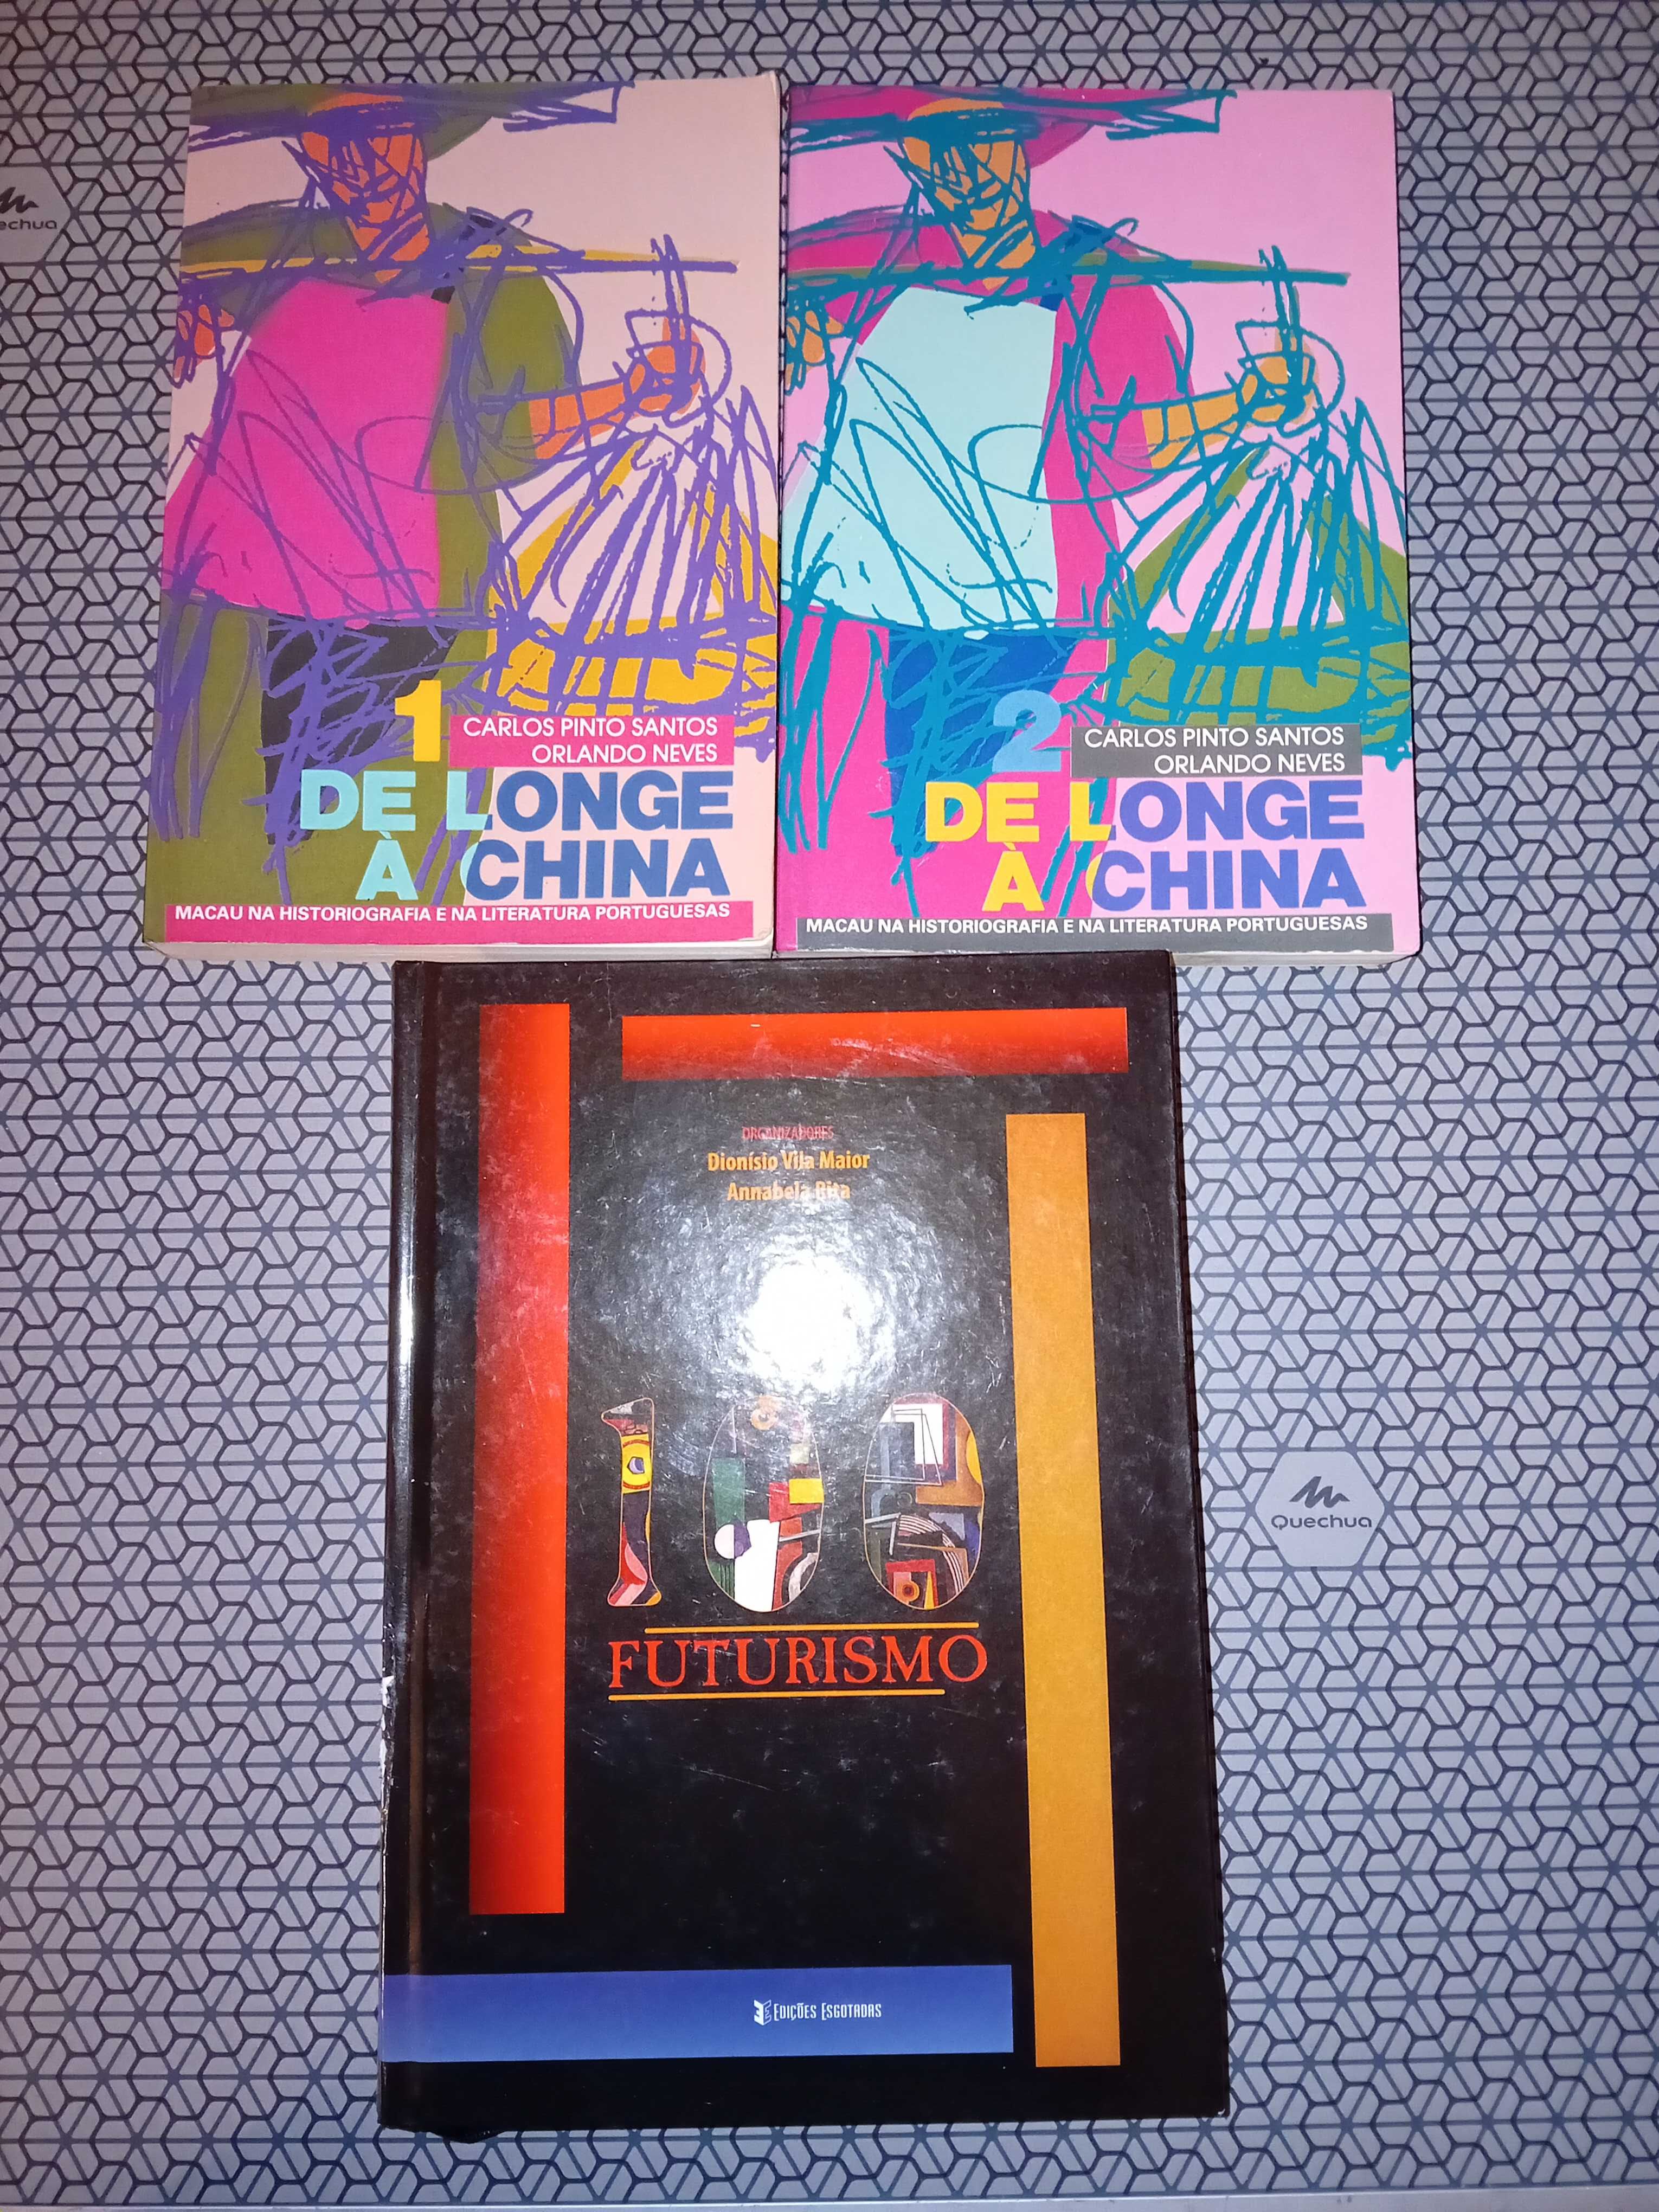 Livros De Longe a China Vol. 1 e 2 e 100 Futurismo.